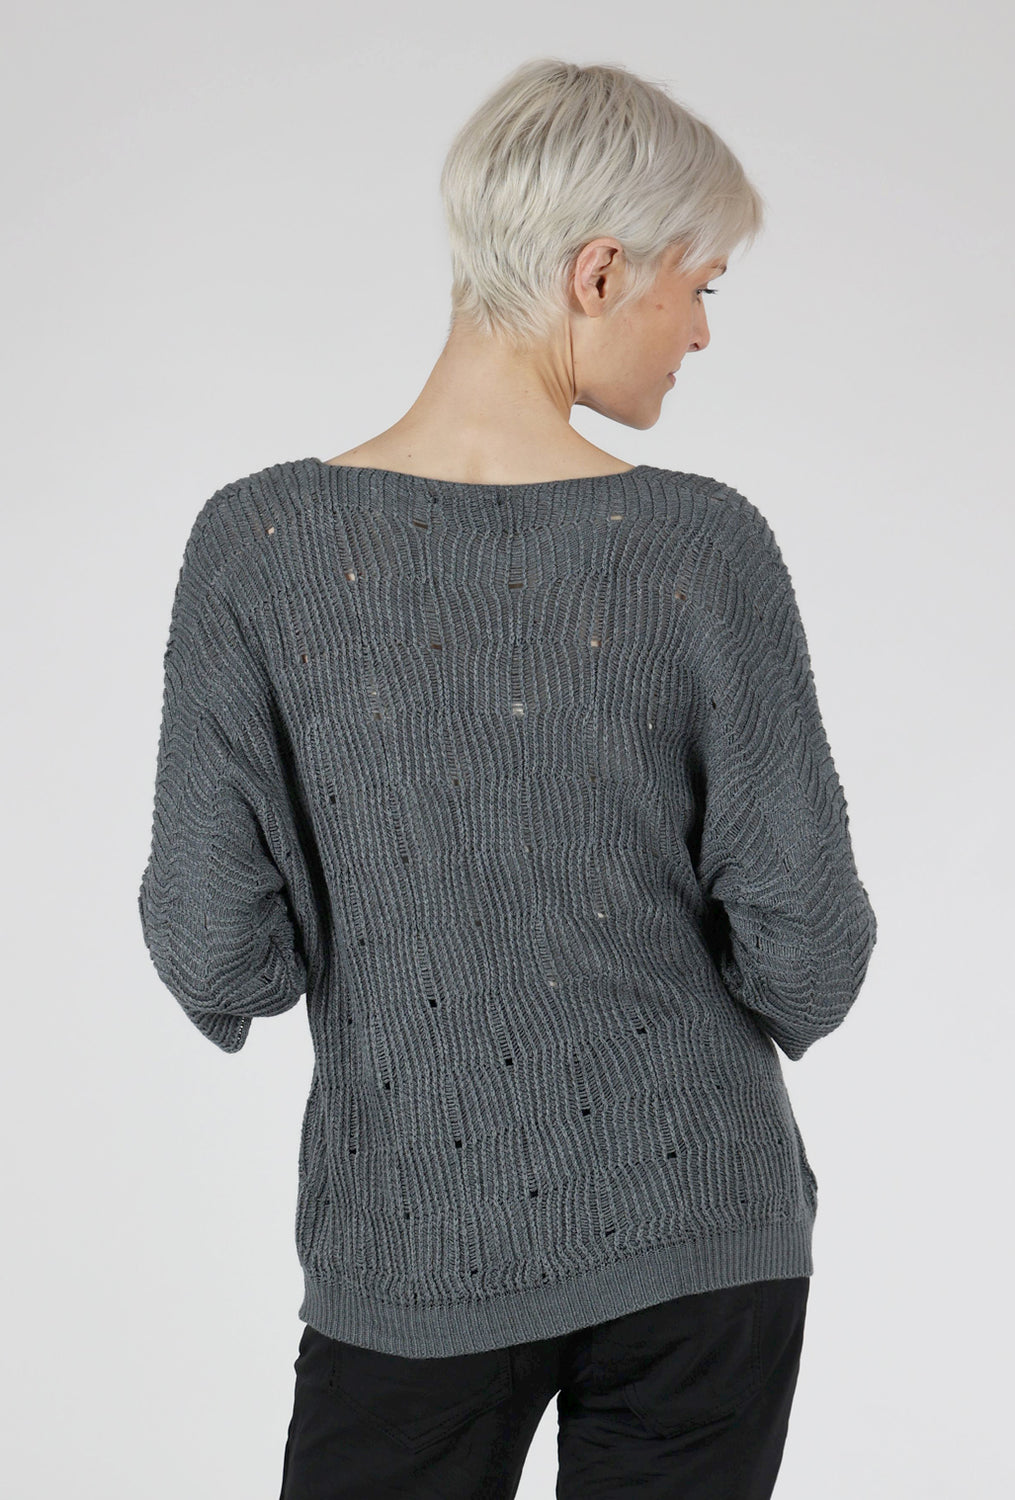 Open Weave Sweater, Gray